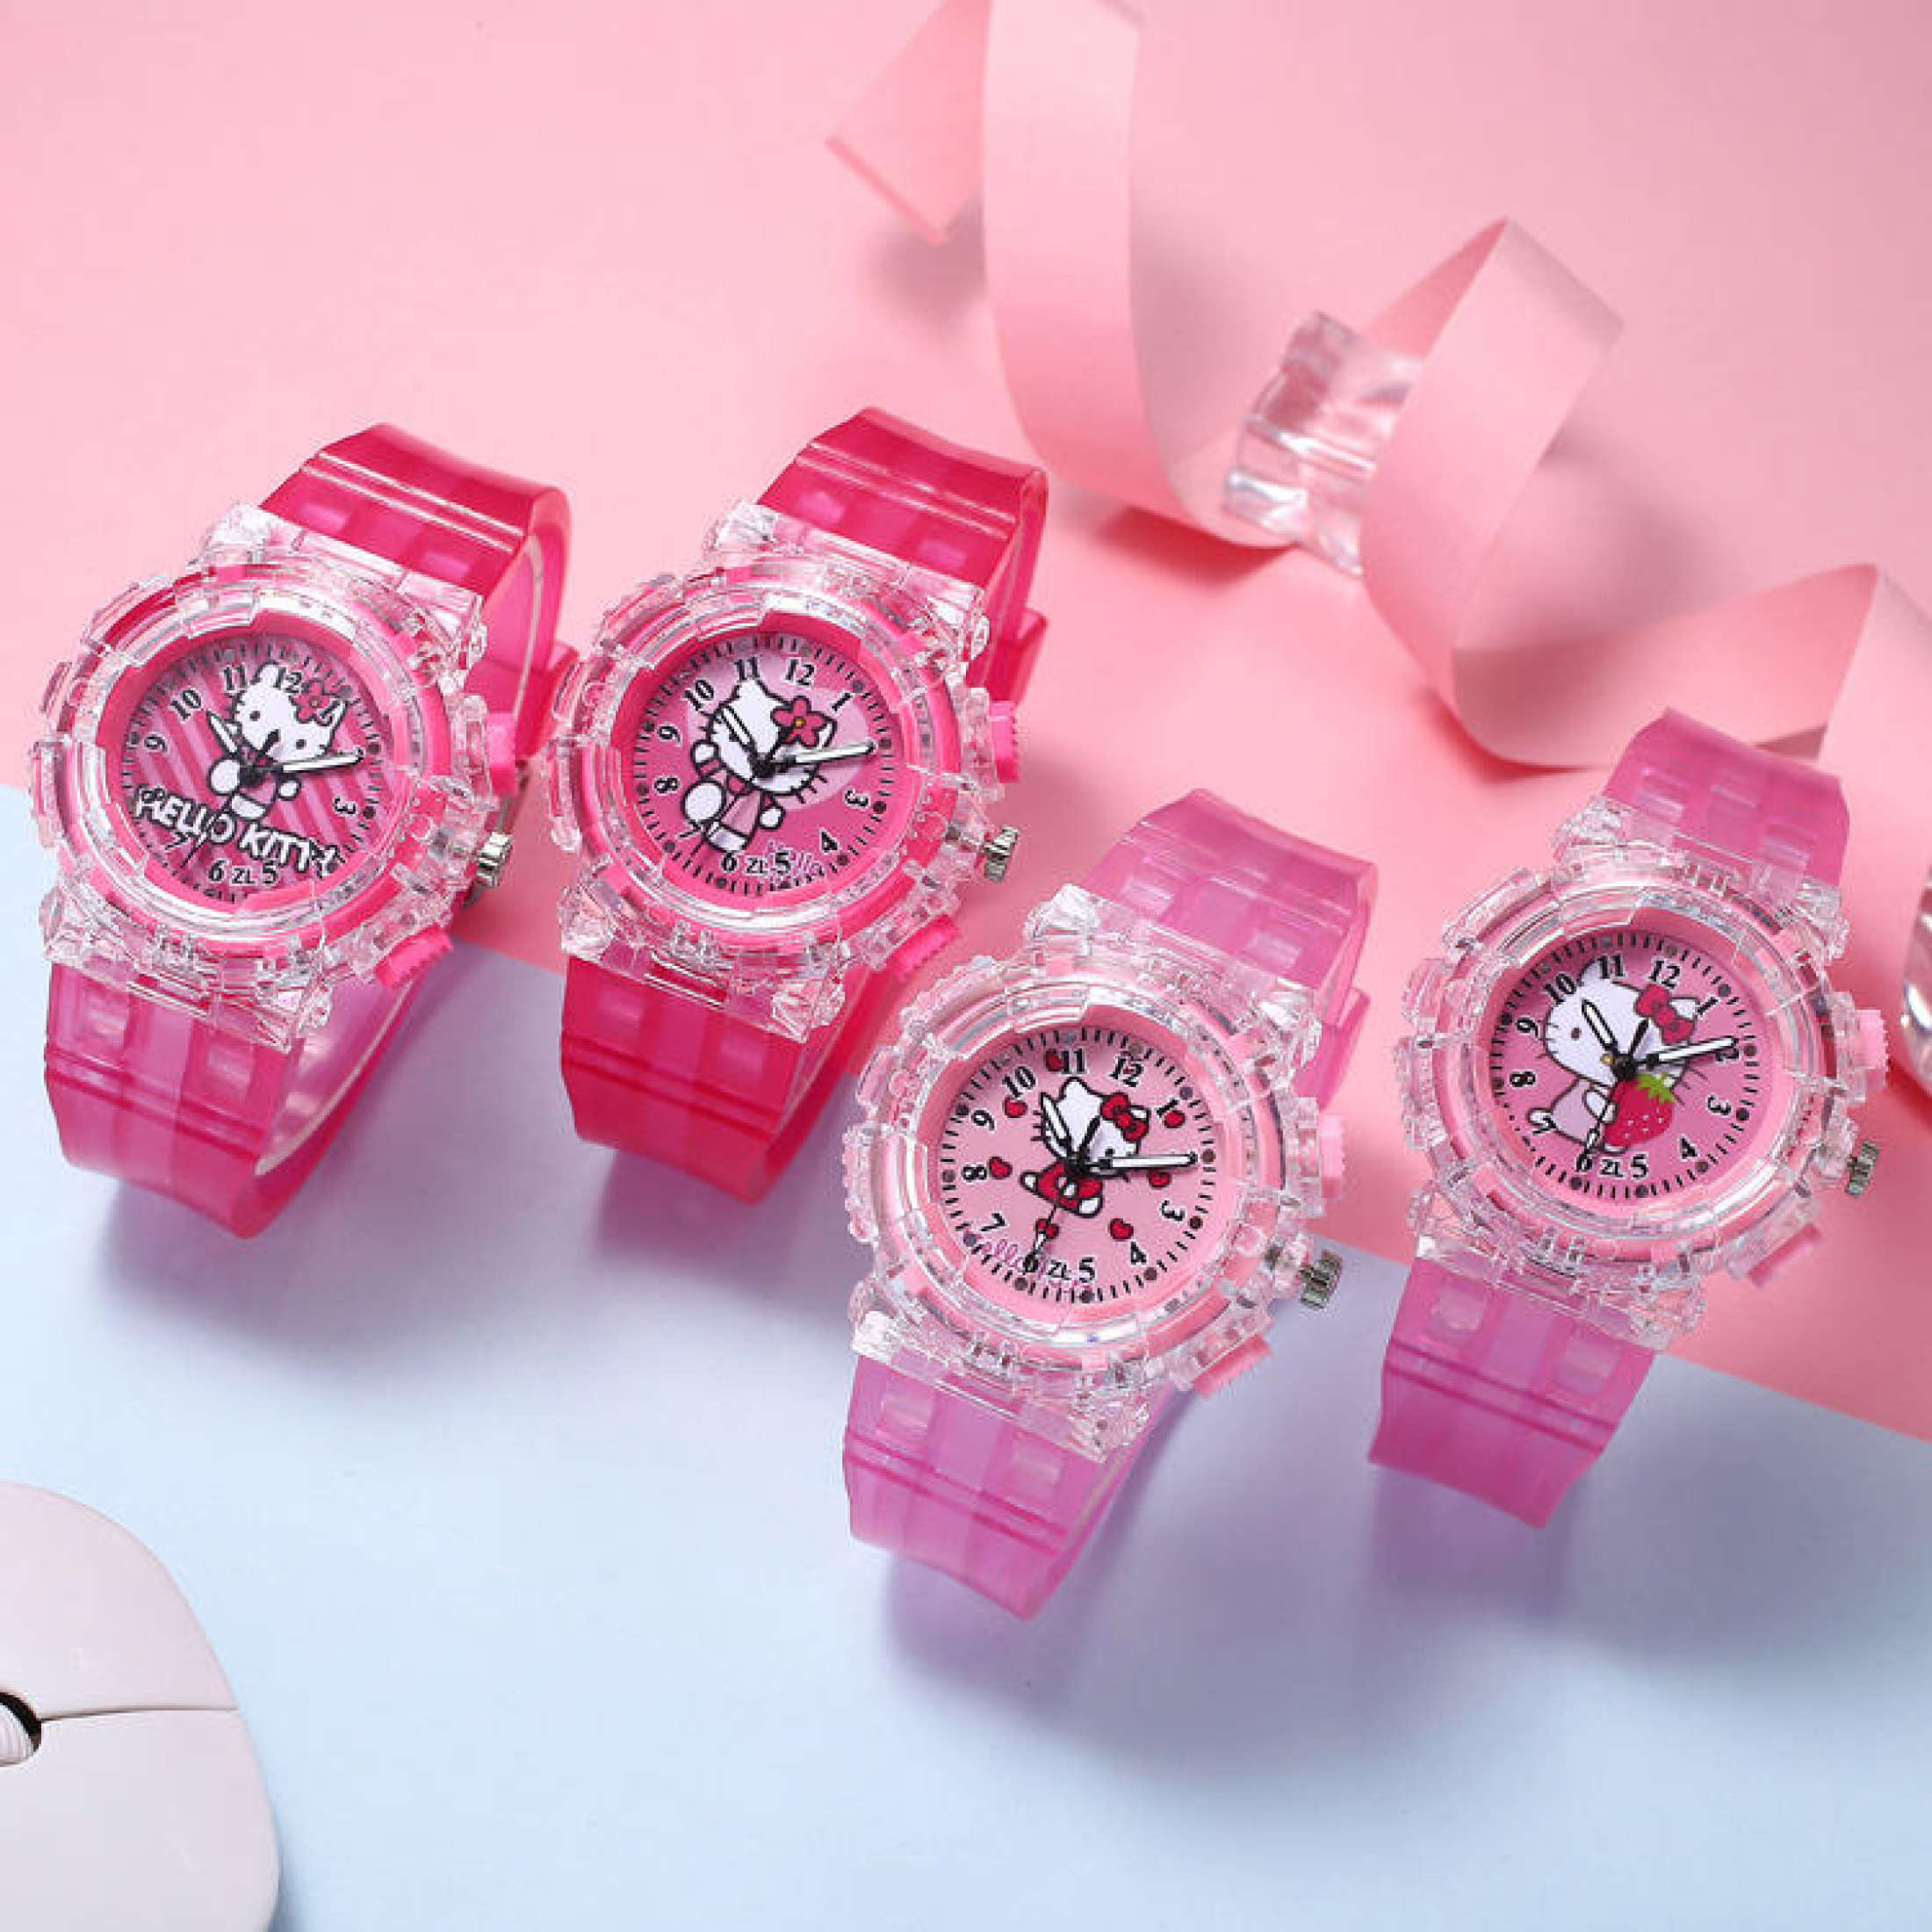 นาฬิกาข้อมือ เด็ก Hello Kittyสีสันสดใส เรืองแสง นาฬิกาเด็กนักเรียนหญิง Kids Watch Girls